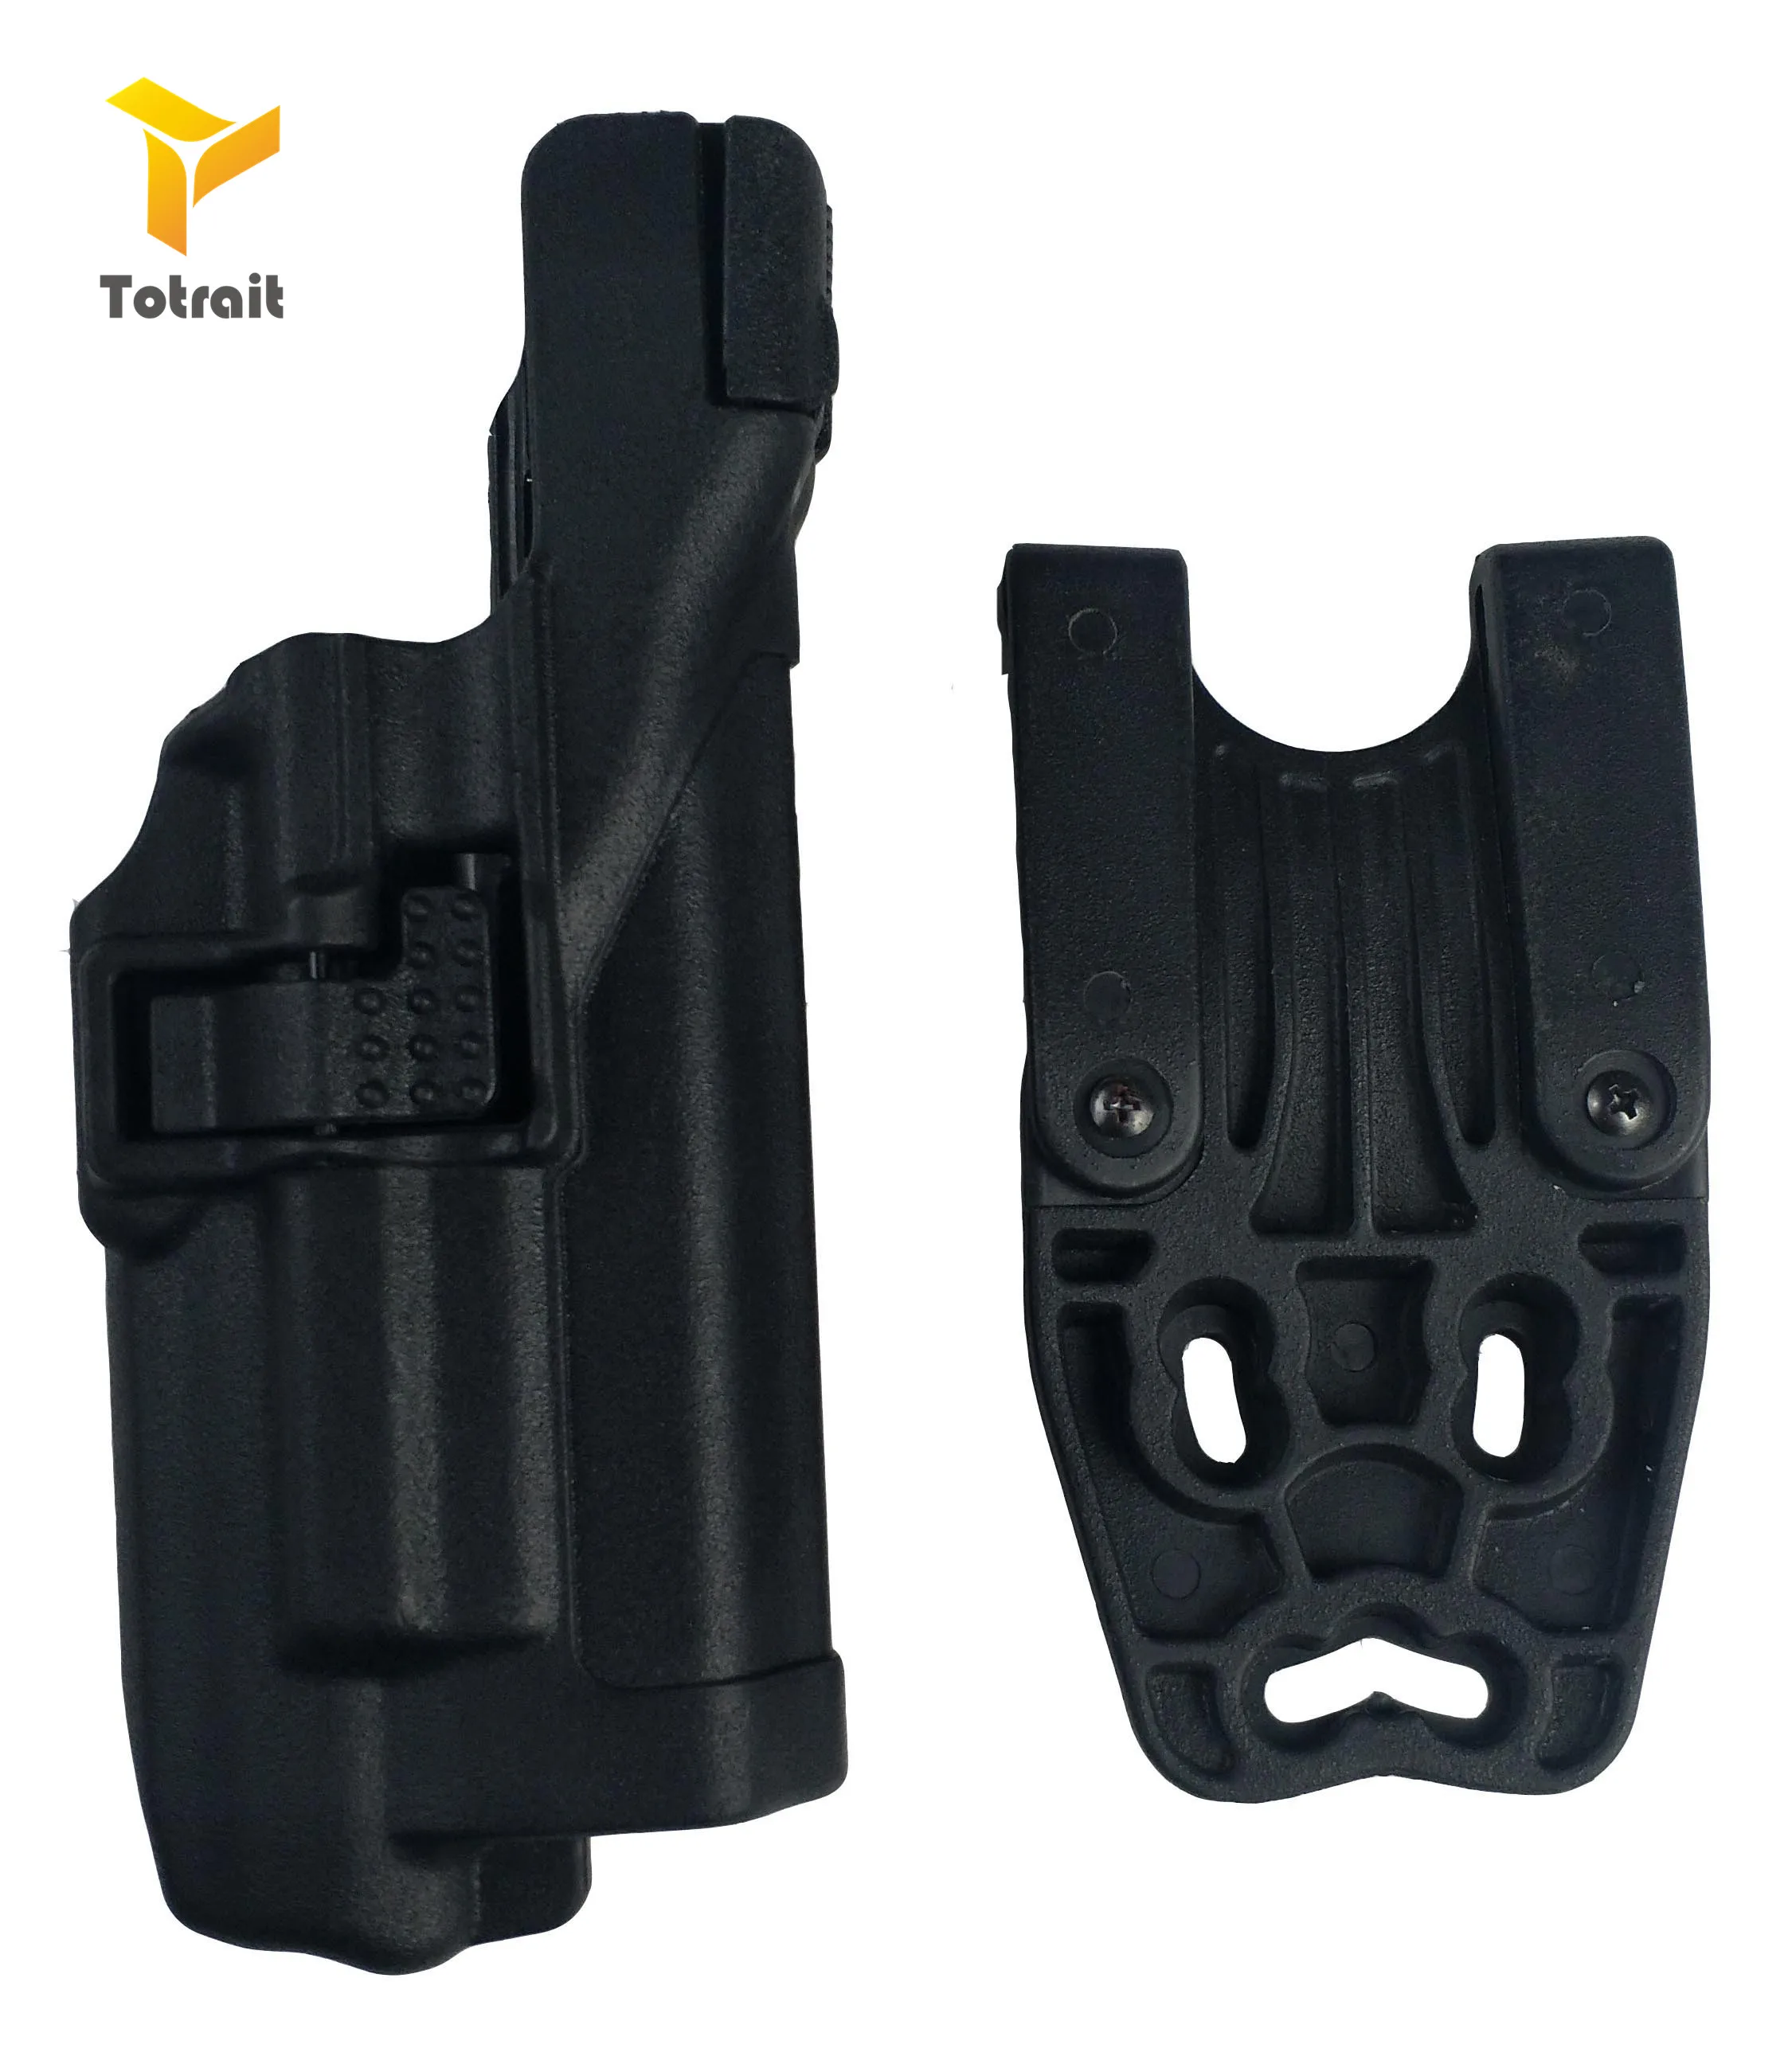 LV3 Tactical Gun Holster Glock 17 Belt Holster Military Army Pistol Gun Carry Case For Glock 17 19 22 23 31 32 Light Bearing - Цвет: lamp glock holster